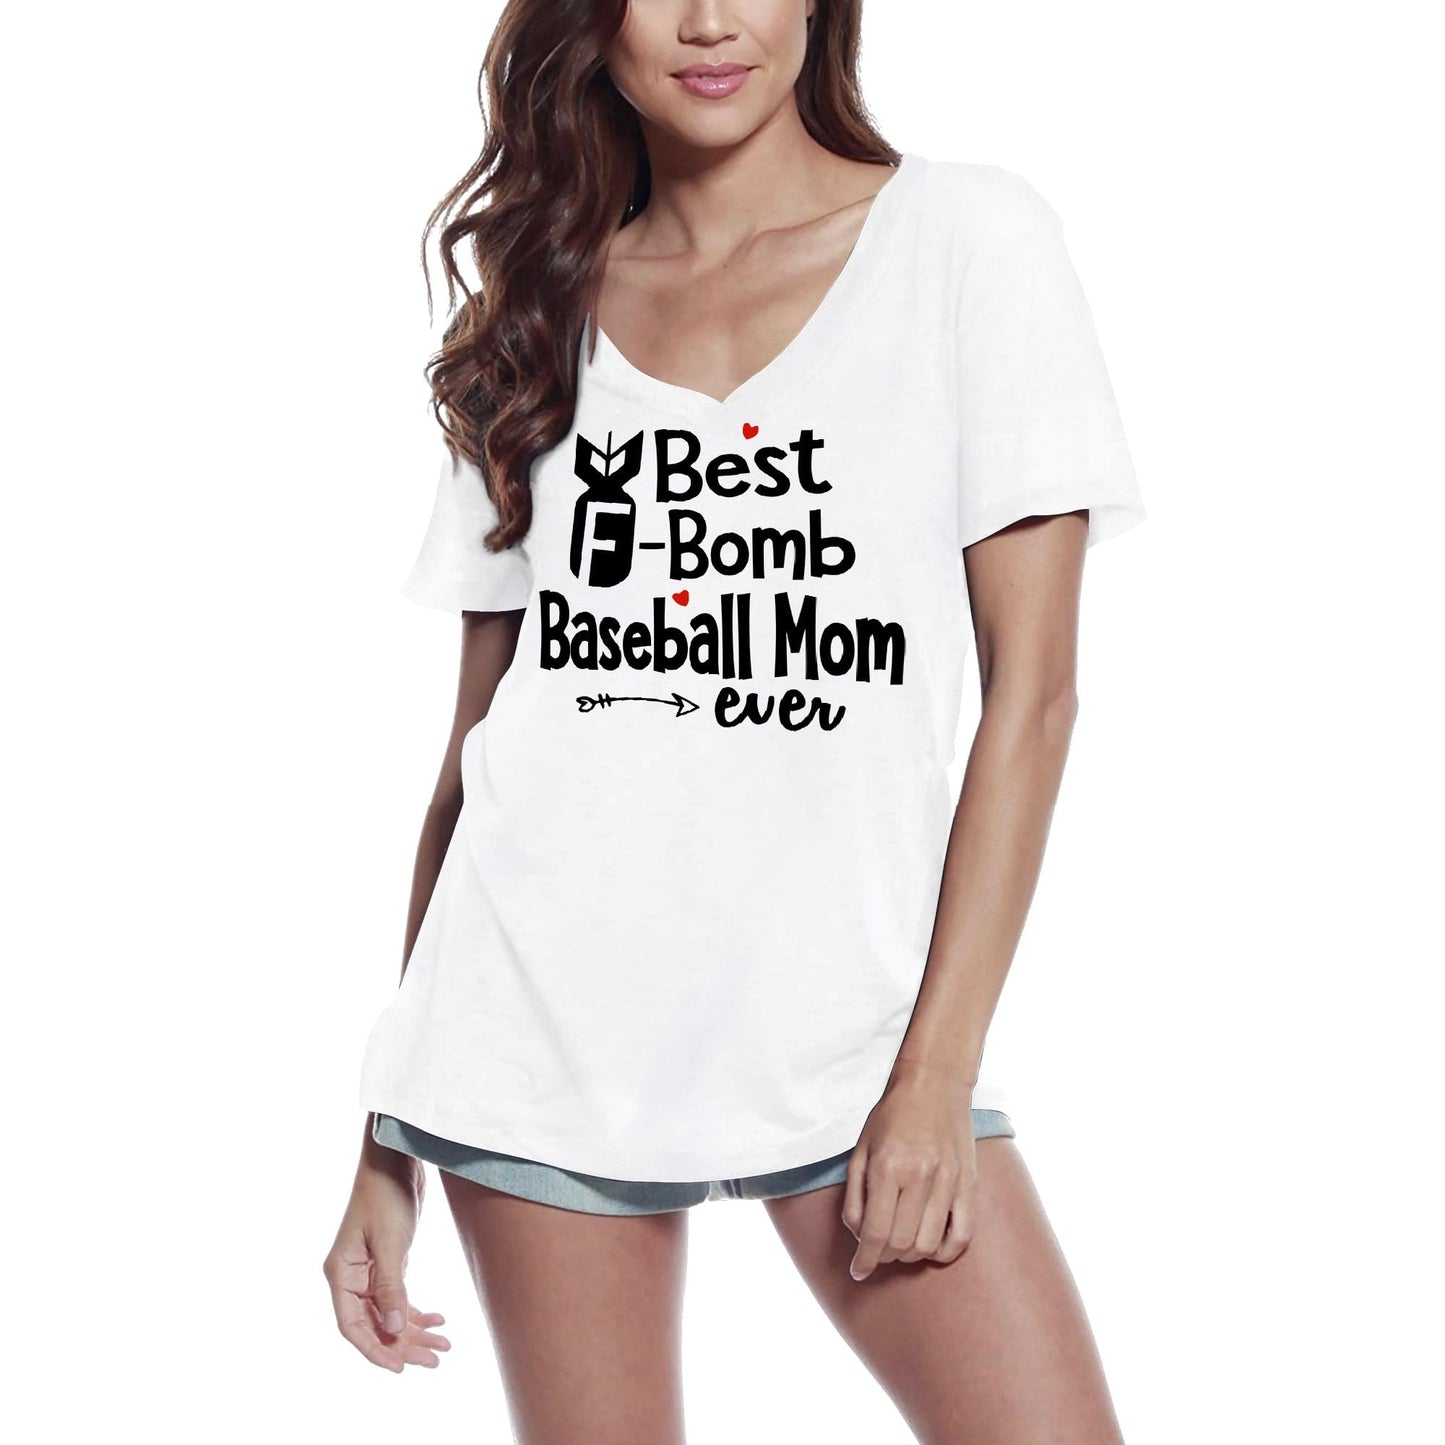 ULTRABASIC Women's T-Shirt Best F-Bomb Baseball Mom Ever - Funny Sport Tee Shirt